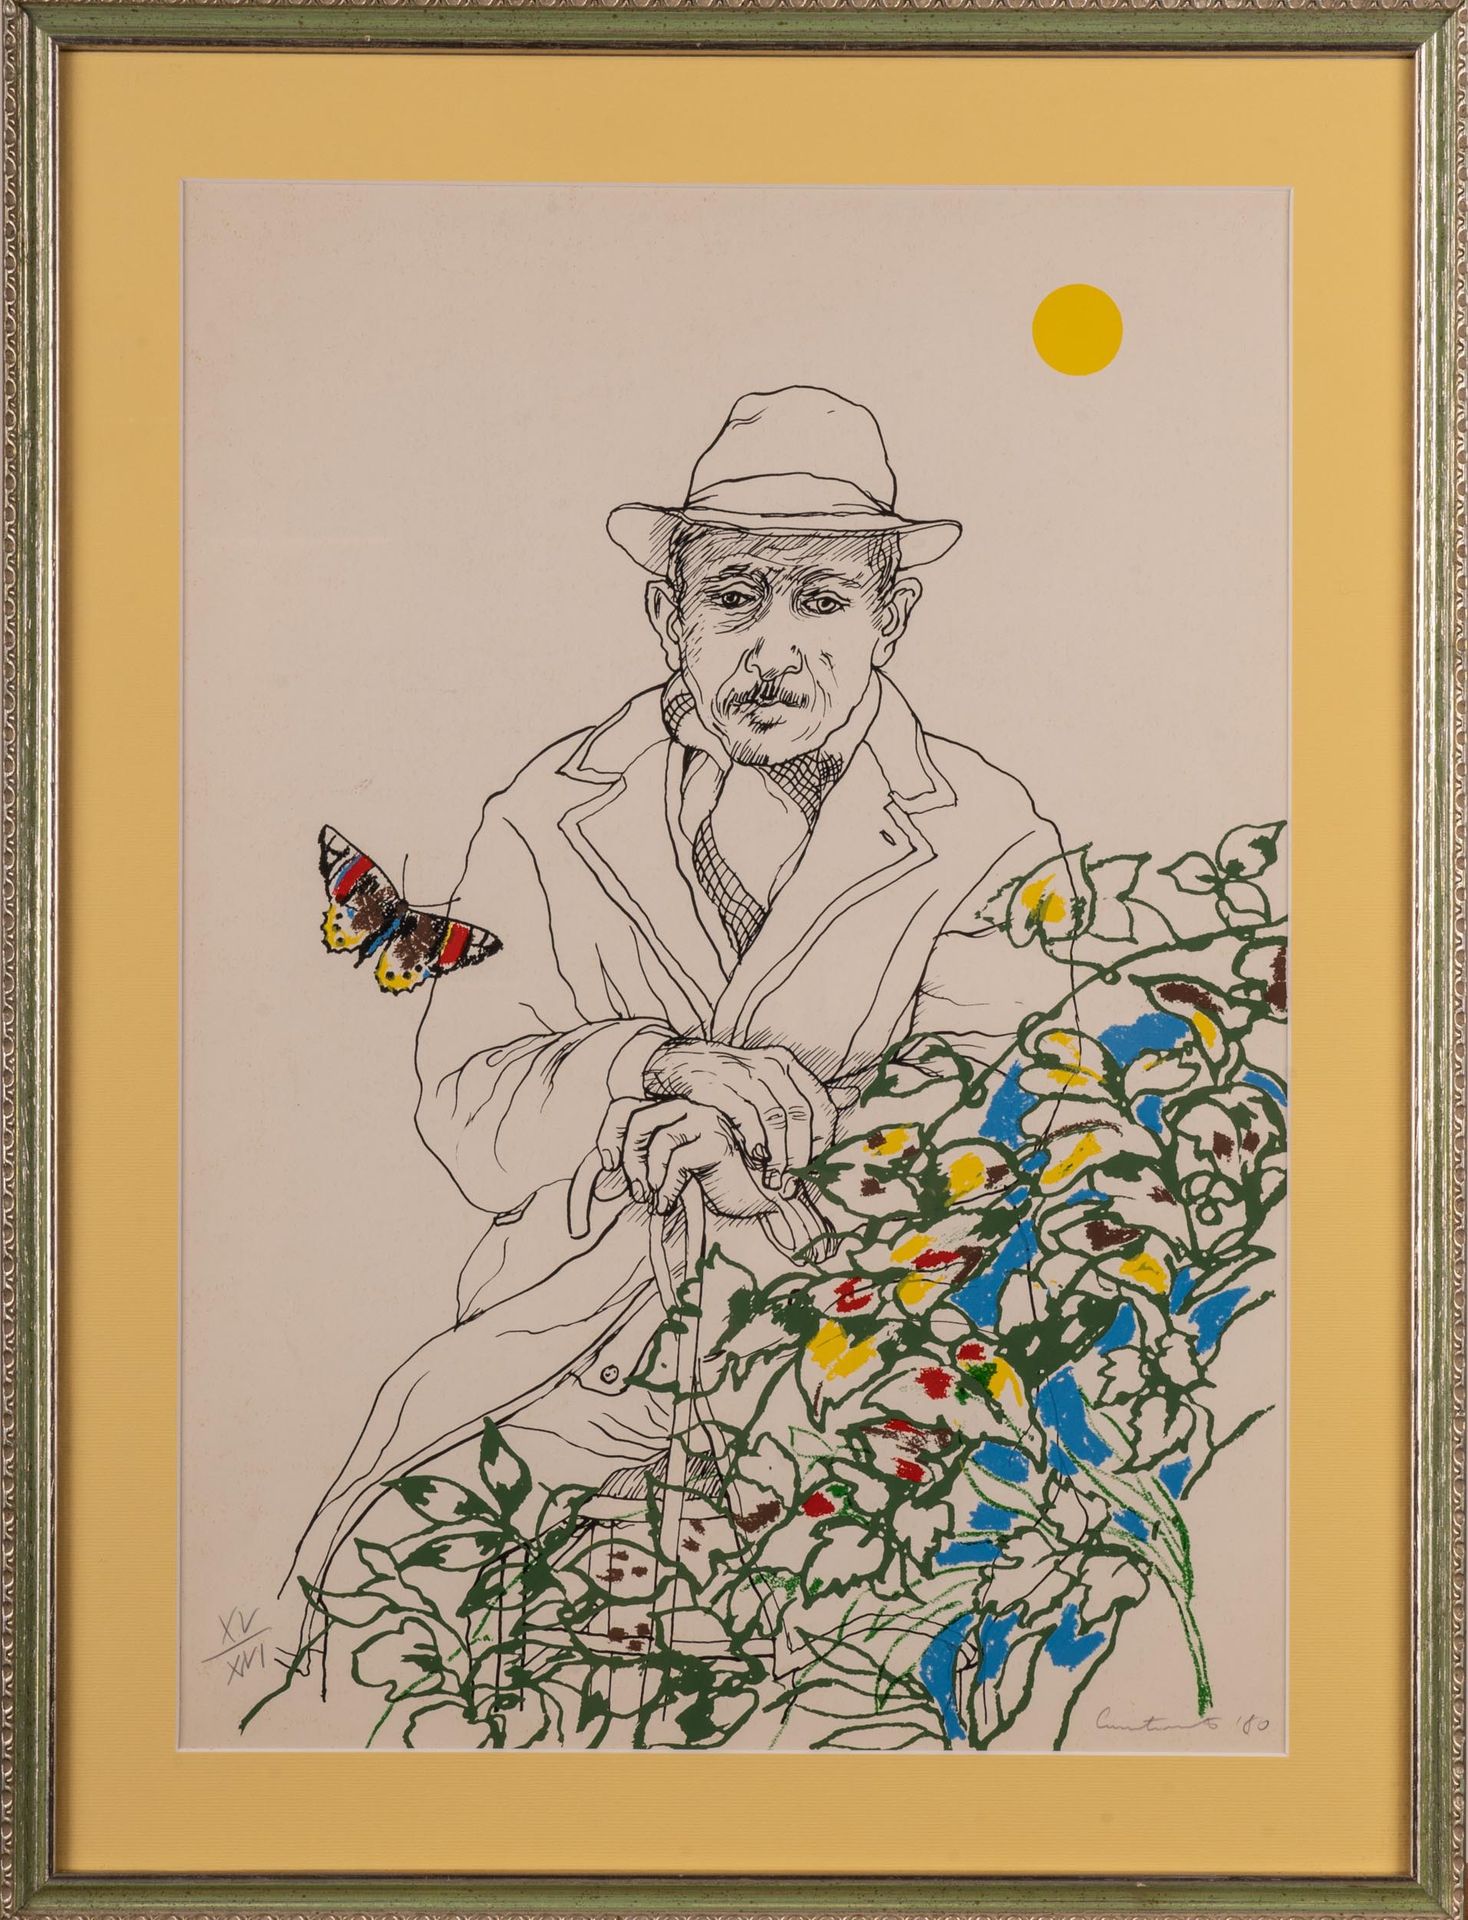 MARIO CAROTENUTO (TRAMONTI 1922 - SALERNO 2017) Anciano con flores y mariposa

1&hellip;